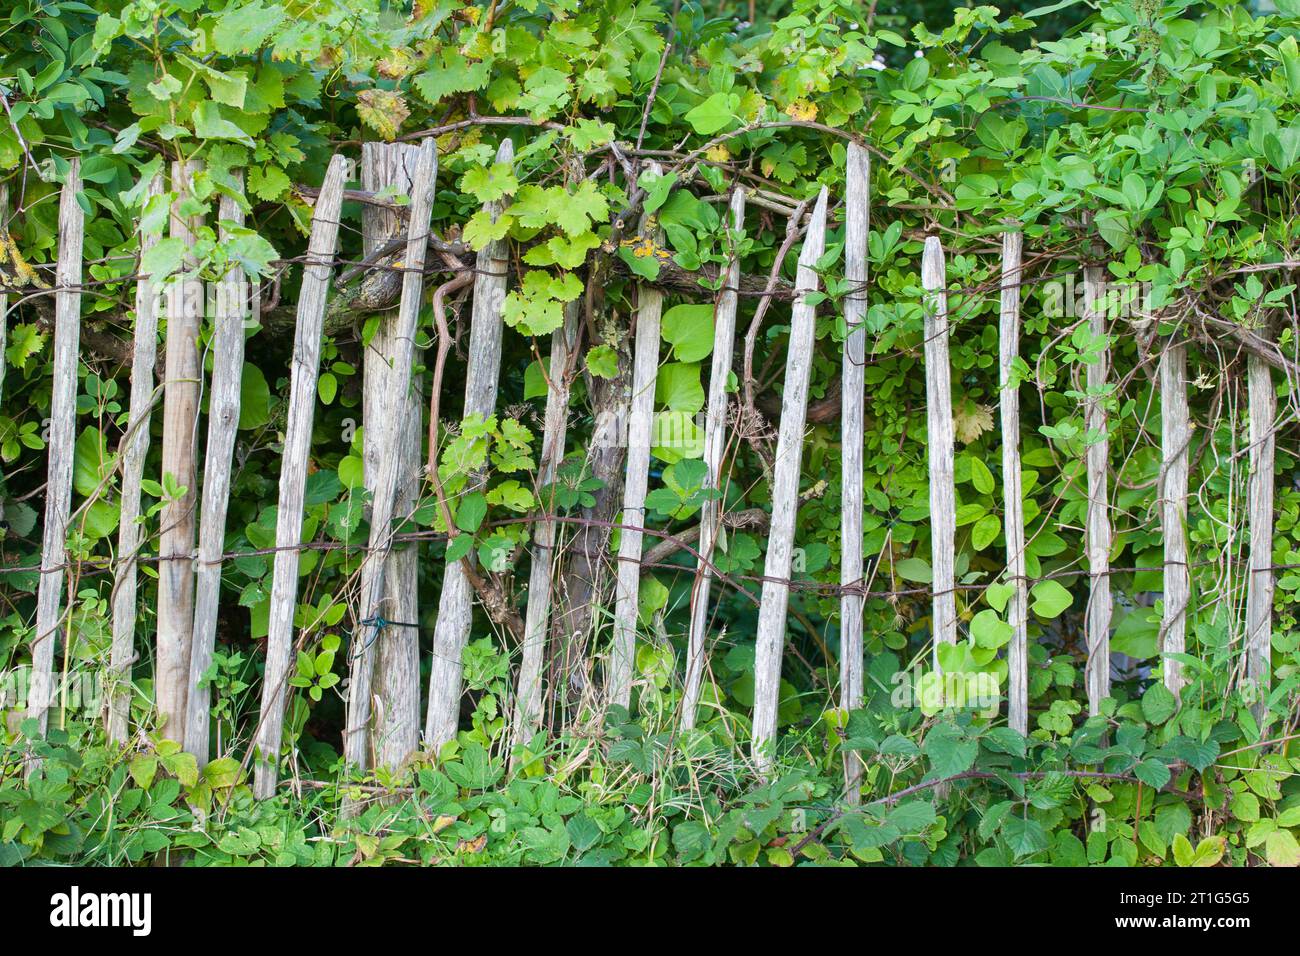 Les clôtures de piquet sont un choix populaire pour les clôtures de jardin et sont connues pour leur esthétique rustique et naturelle. Banque D'Images